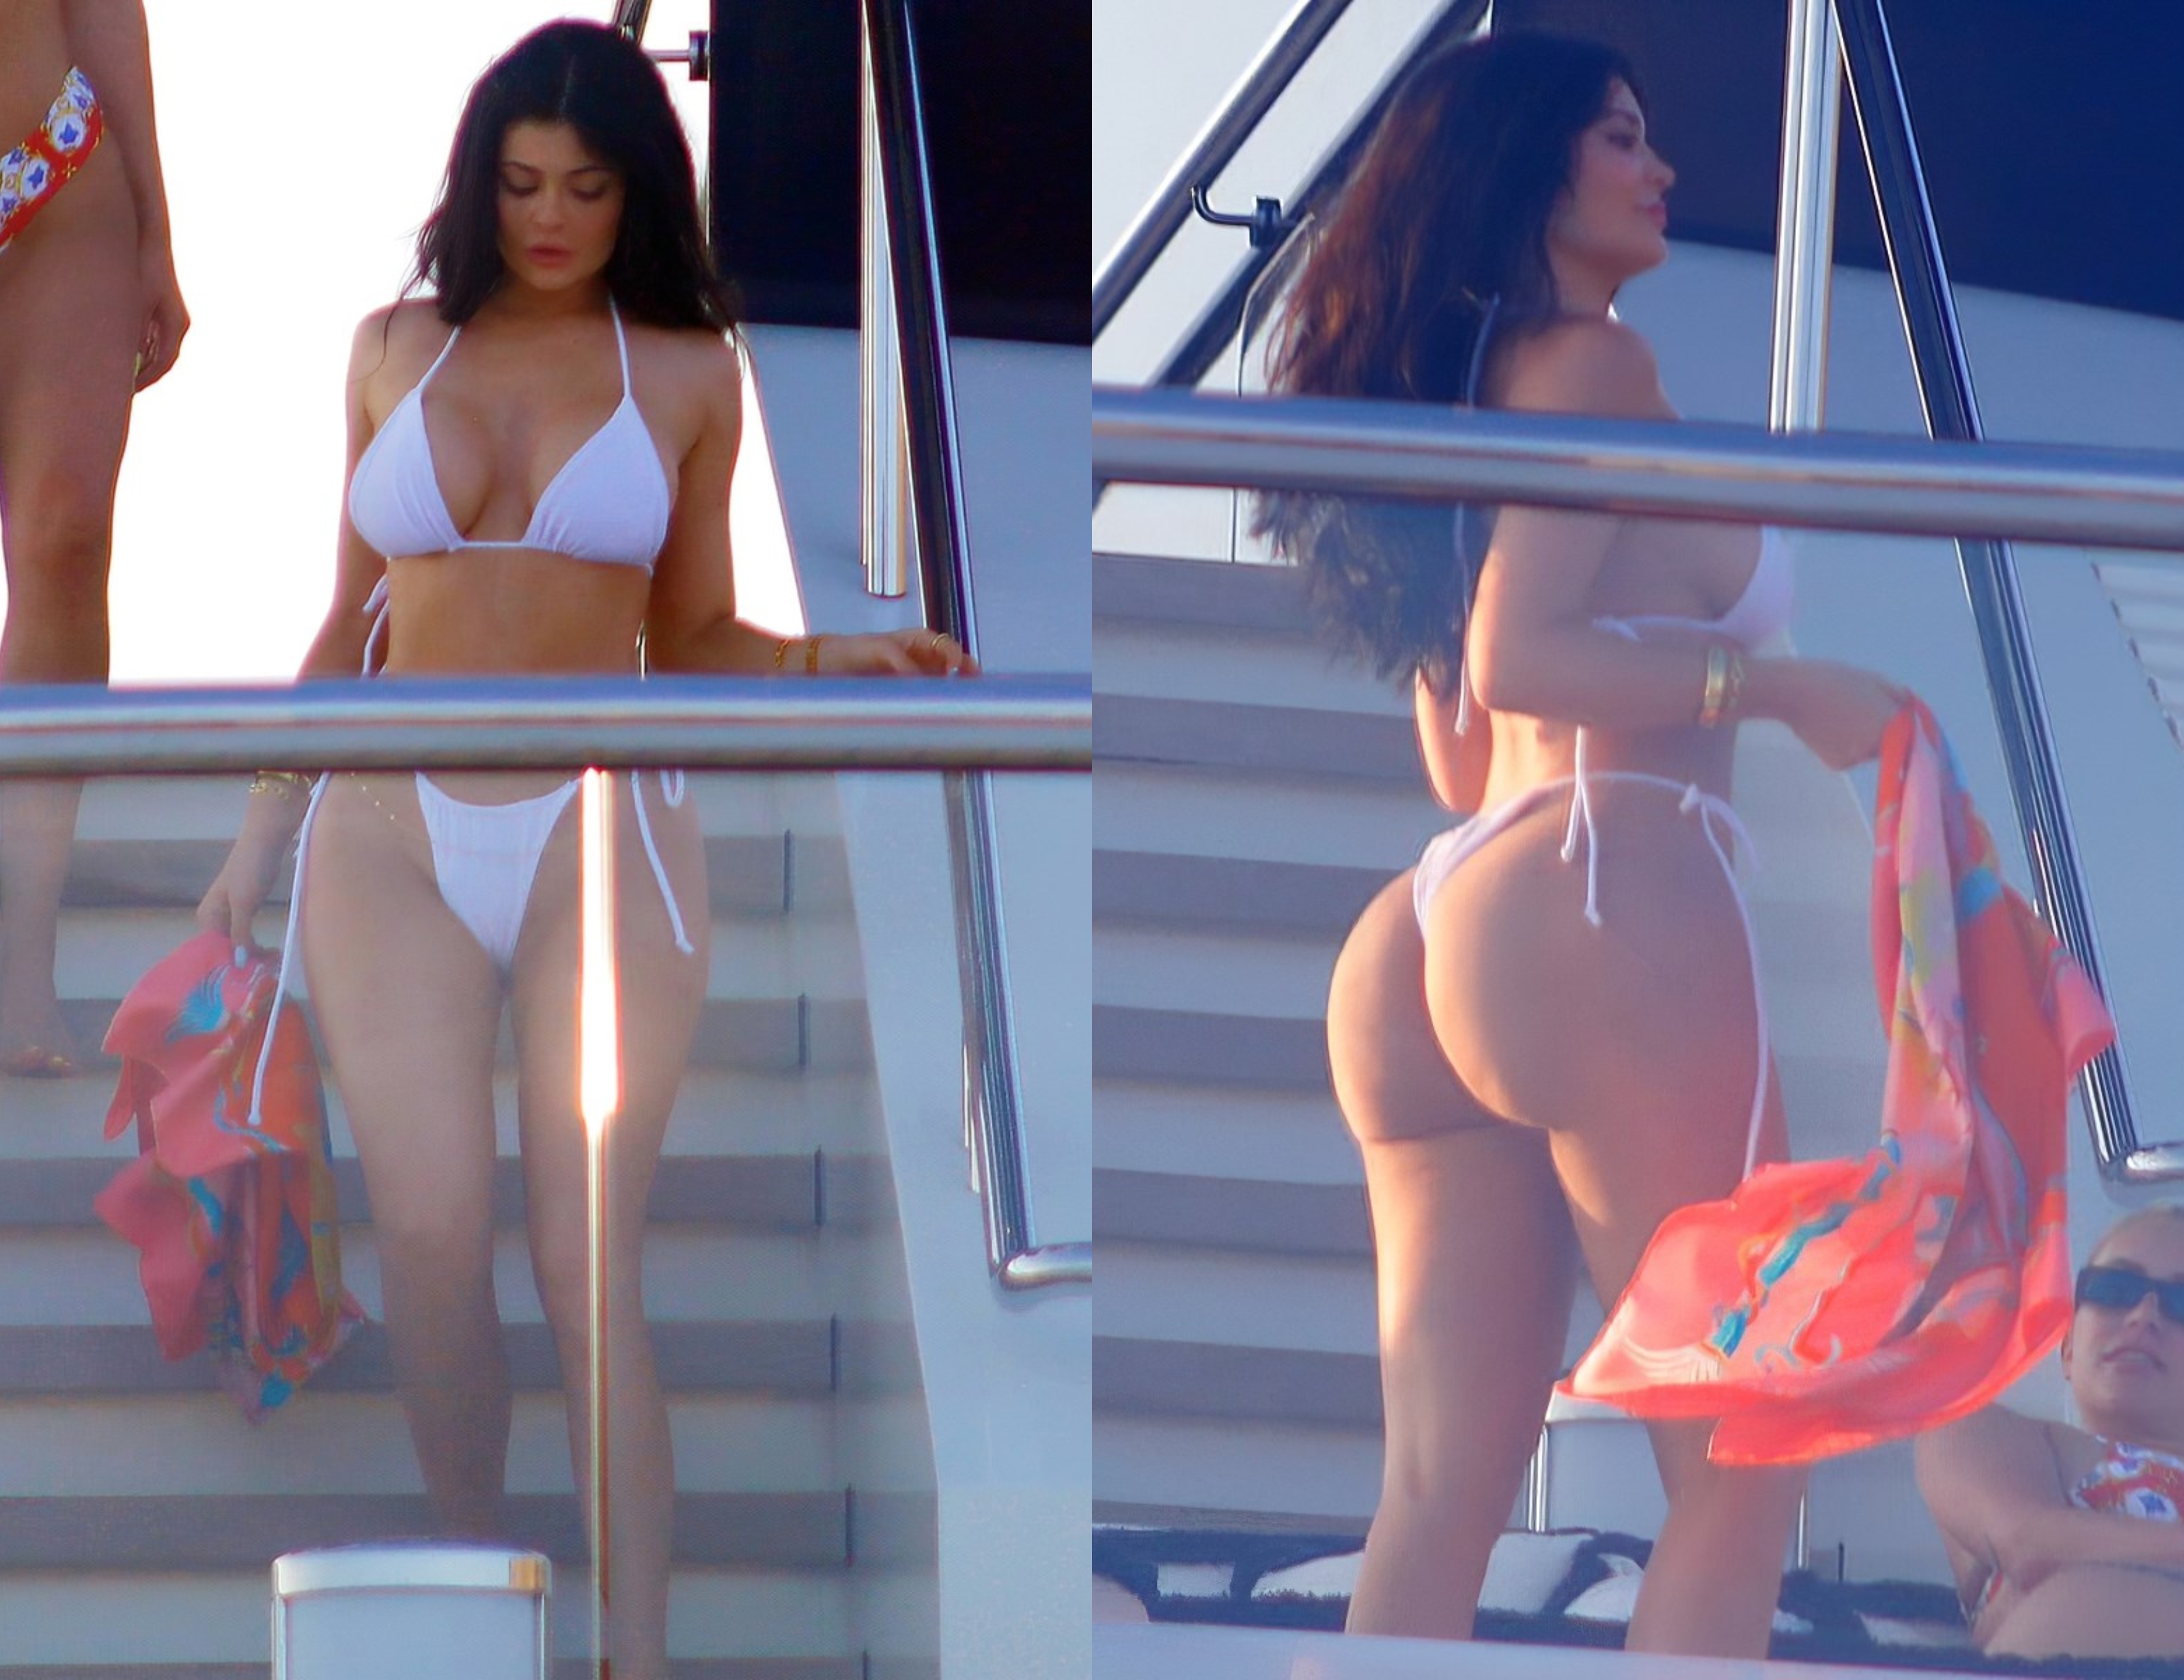 ¡Ella tiene nalga y te….! Morbo-paparazzis sorprenden Kylie Jenner presumiendo sus atributos (FOTOS)